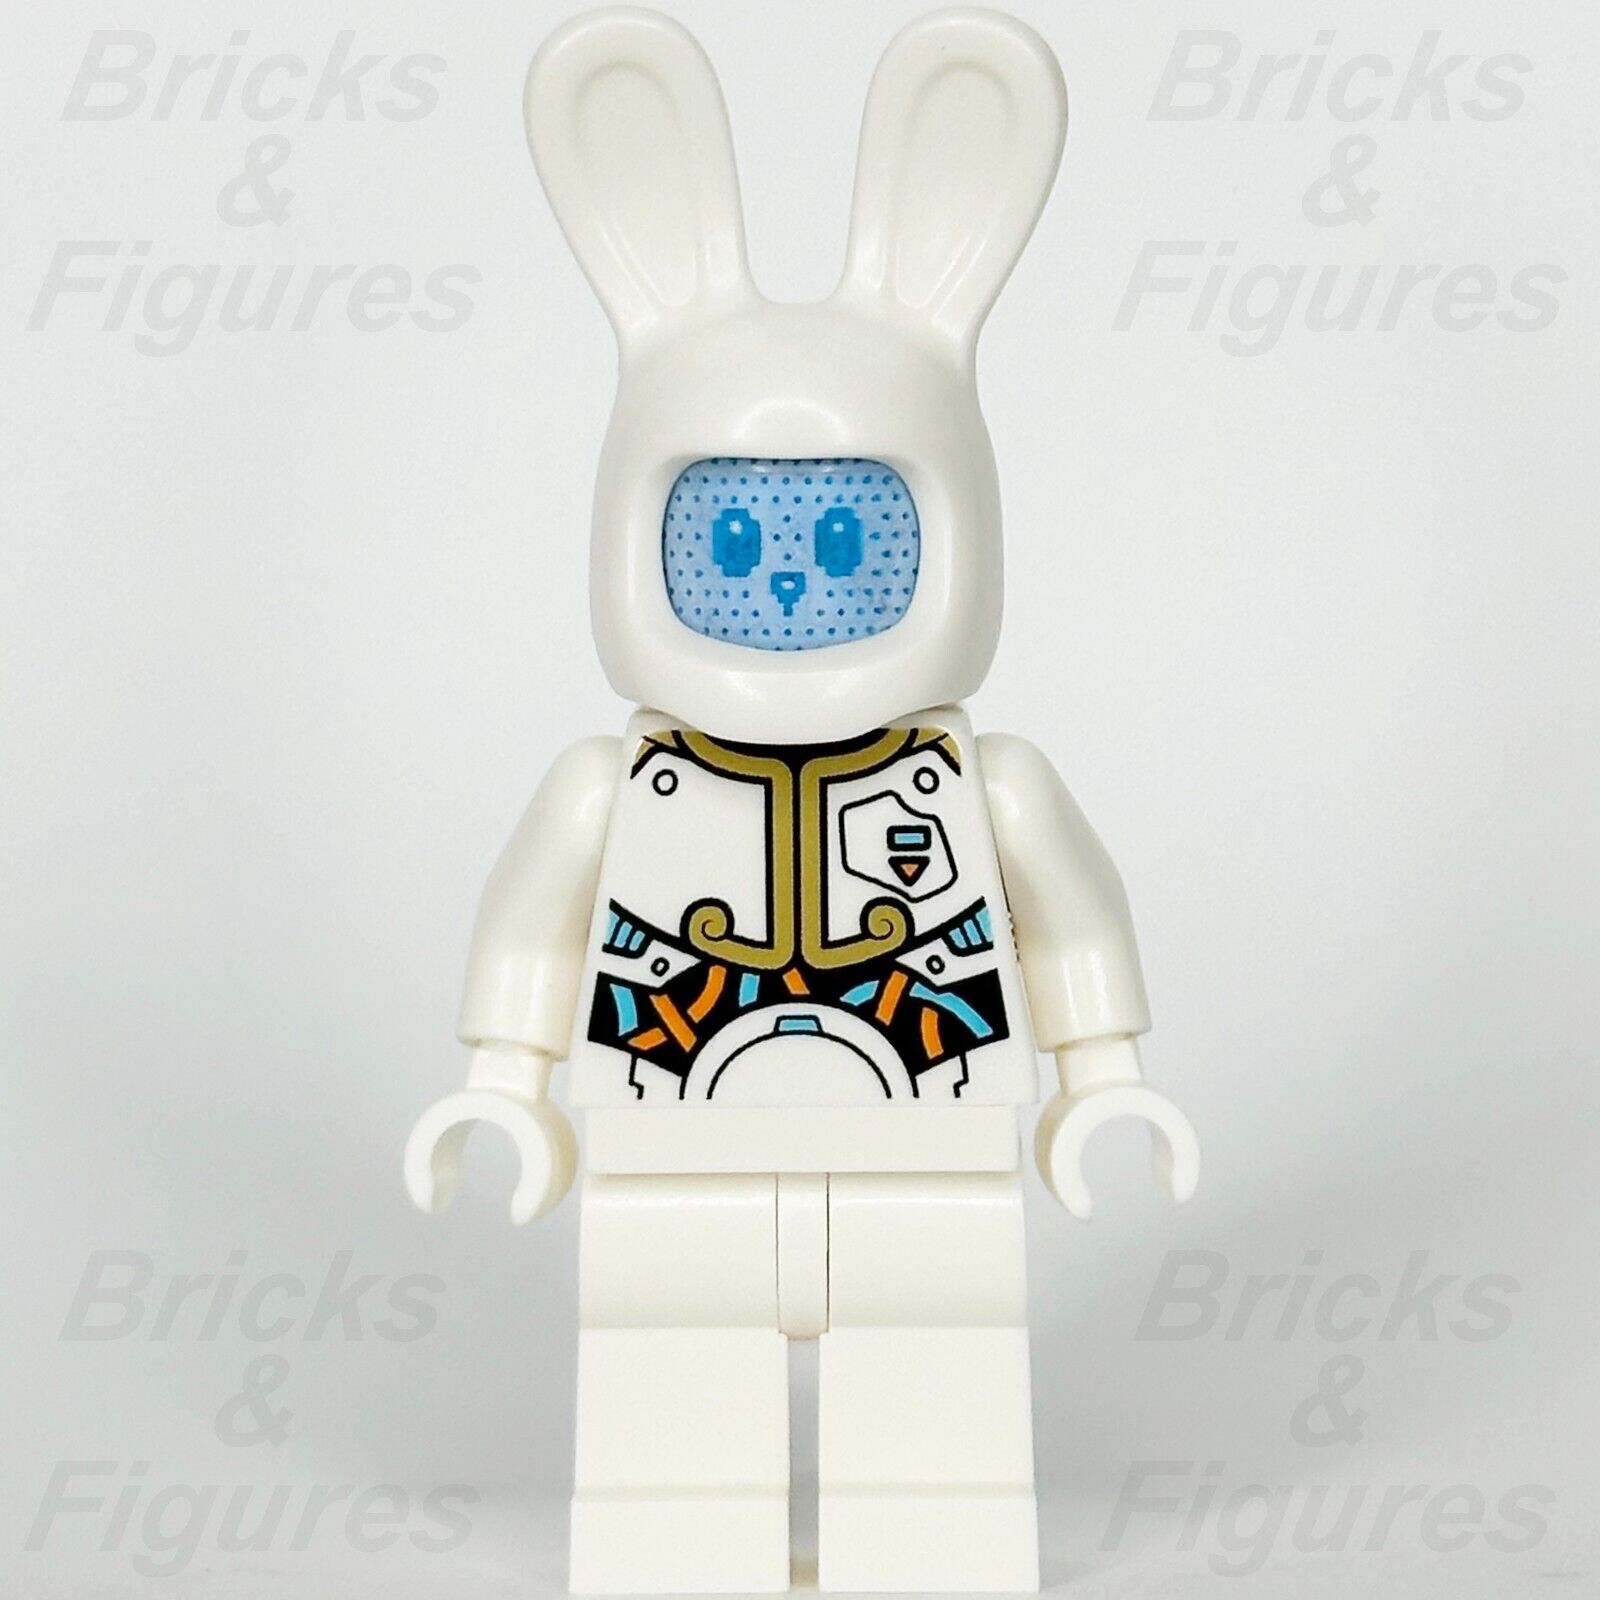 レゴ モンキー キッド 月面ウサギ ロボット ミニフィギュア 邪悪な怒っているハッピーフェイス 80032 mk081